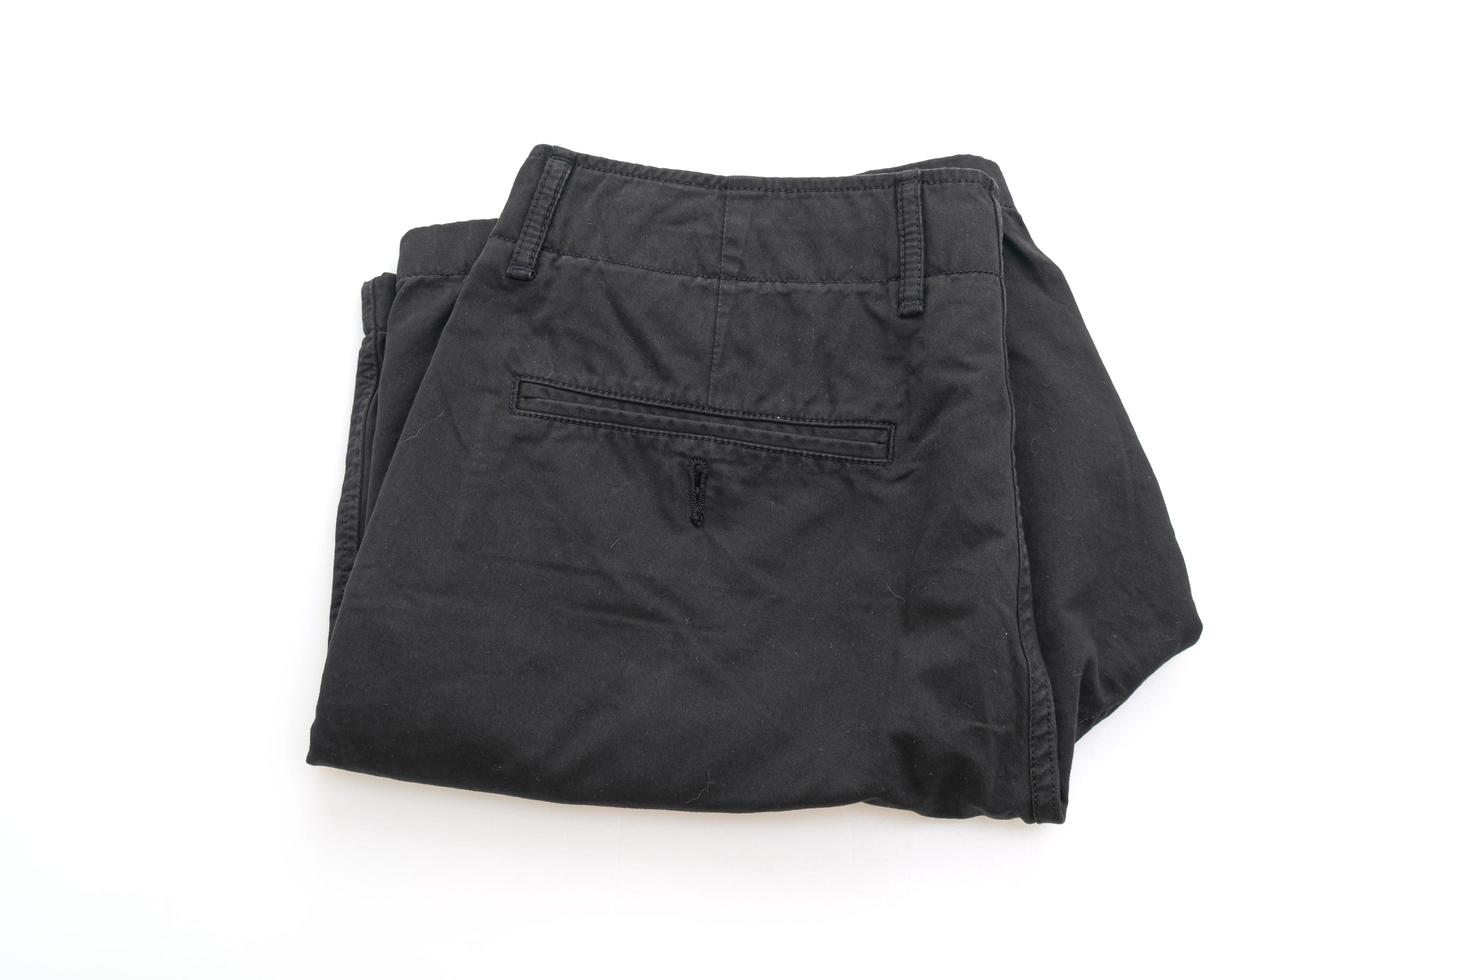 schwarze Shorts Hose gefaltet isoliert auf weißem Hintergrund foto